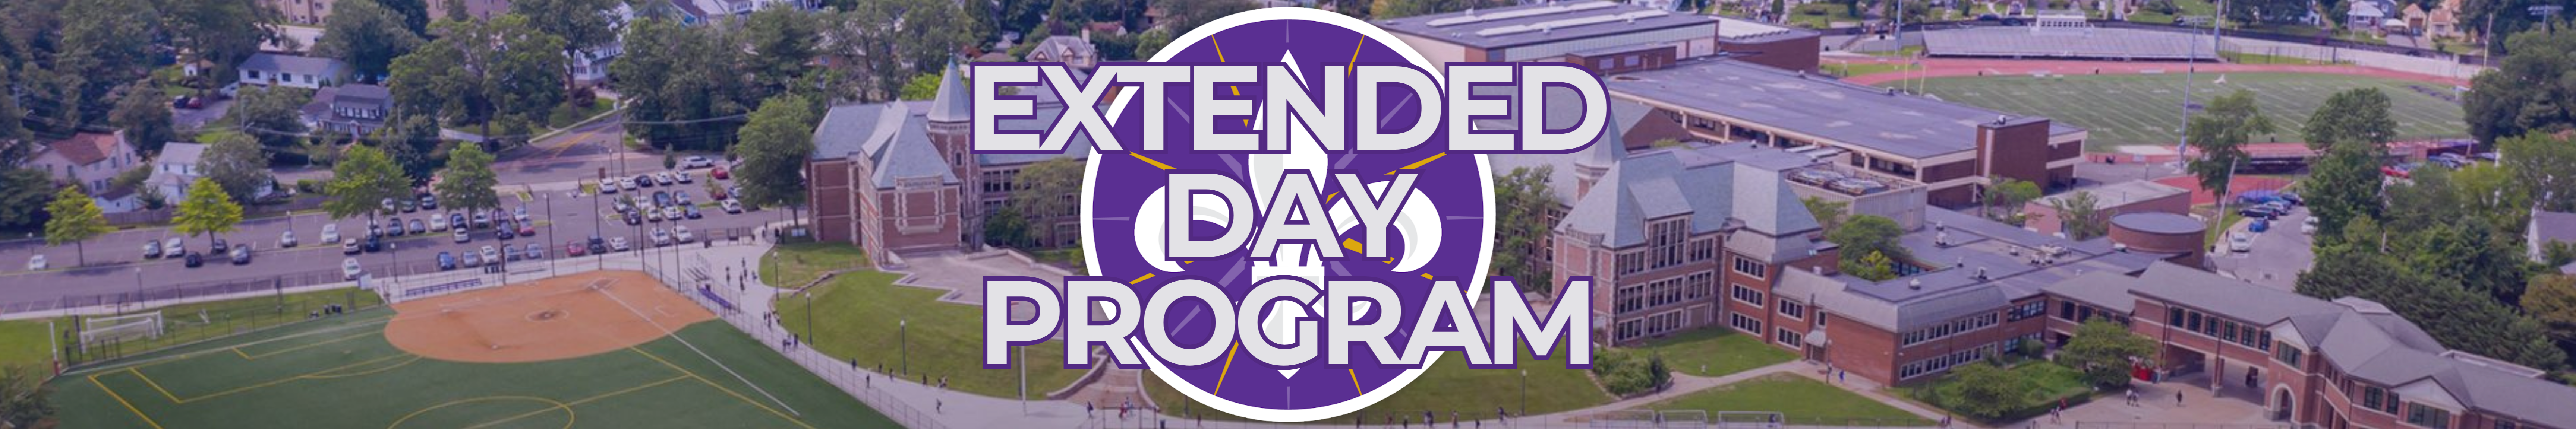 Extended Day Program banner